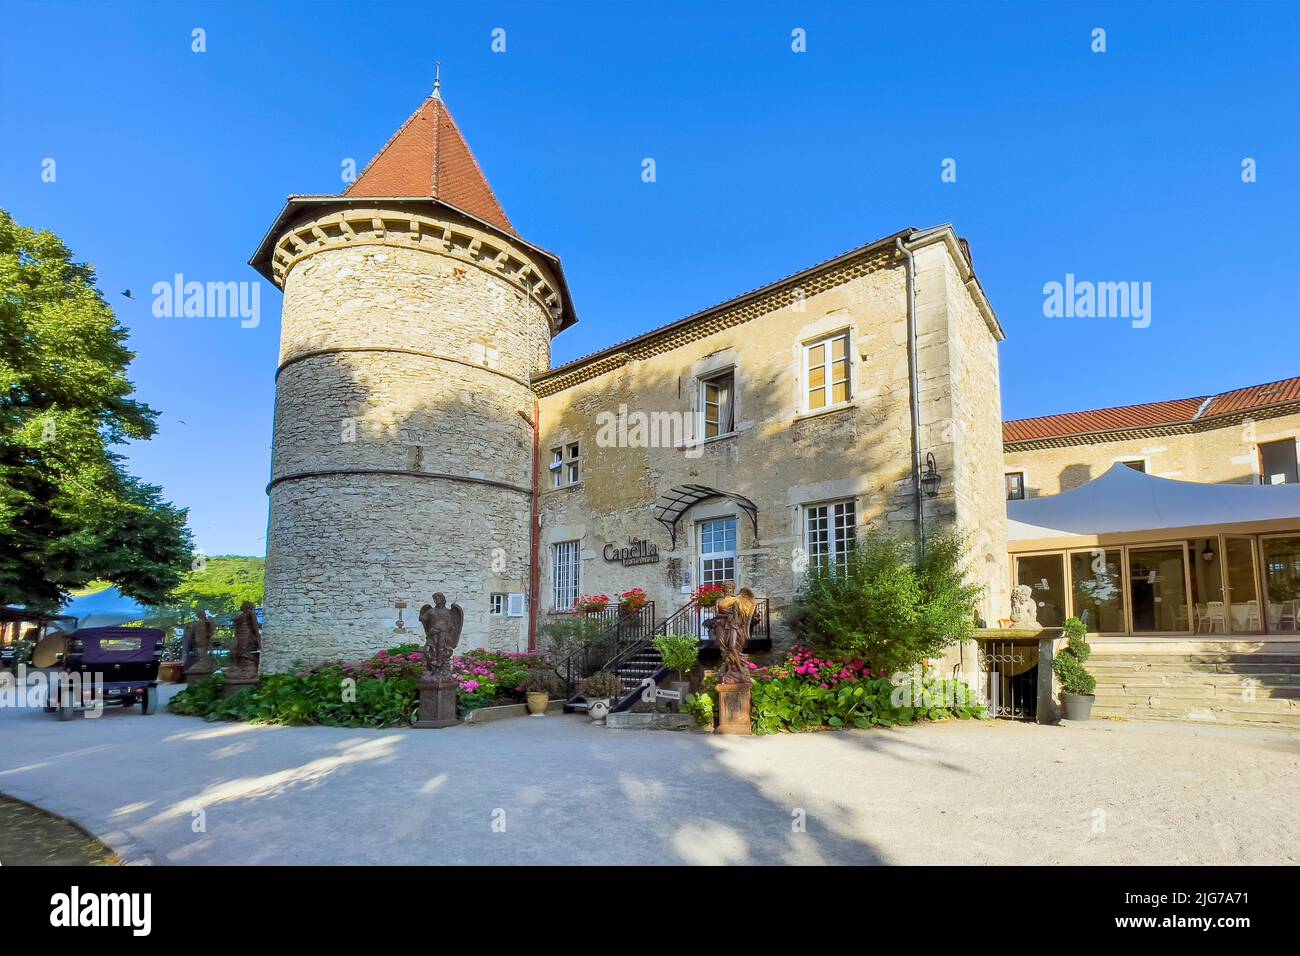 Tower of Chateau de Chapeau Cornu, Vignieu, Departement Isere, Region Auvergne-Rhone-Alpes, France Stock Photo